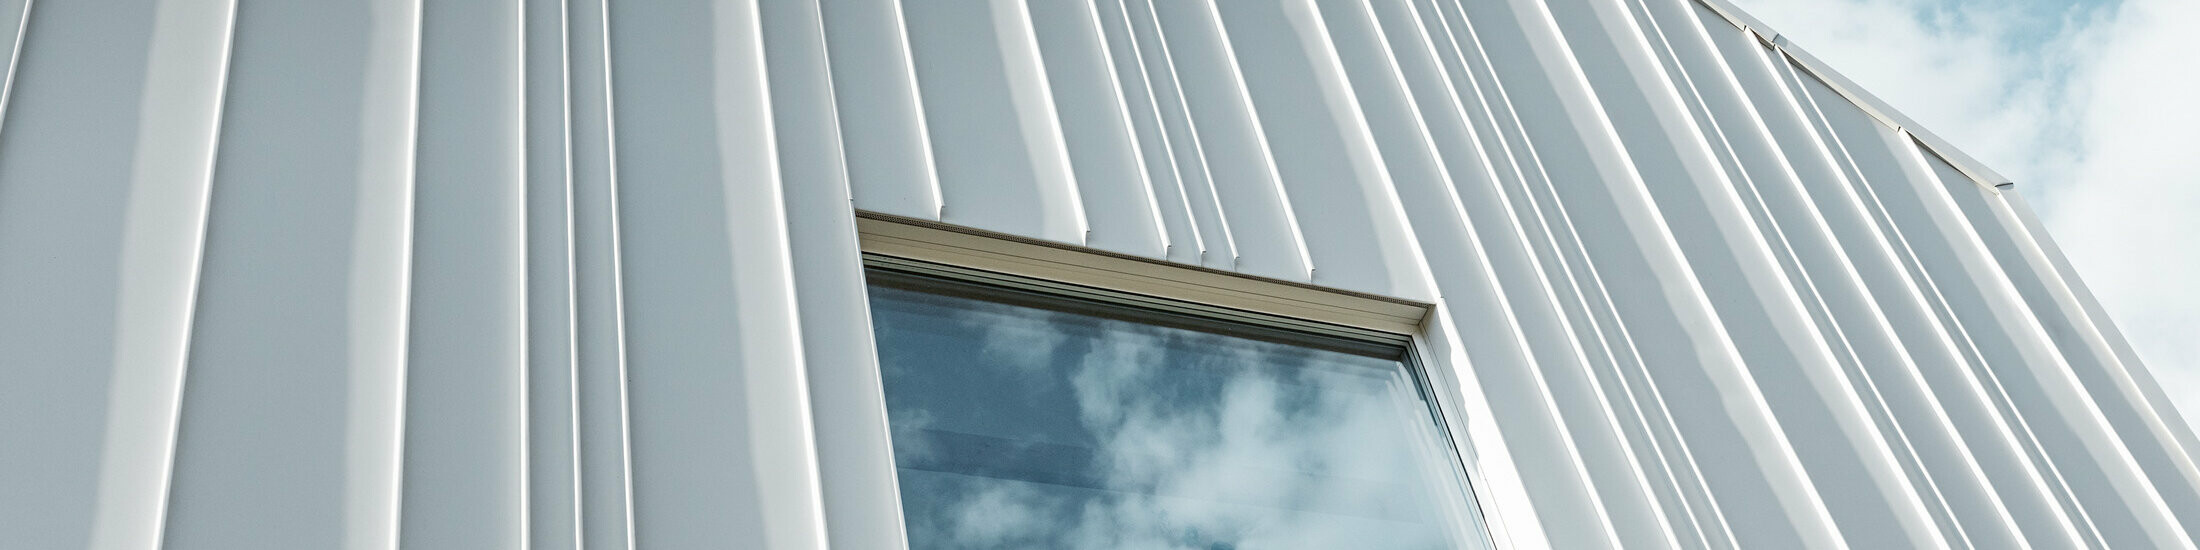 weißes PREFALZ als Winkelstehfalz an der Fassade mit unterschiedlichen Scharenbreiten und einem Fenster